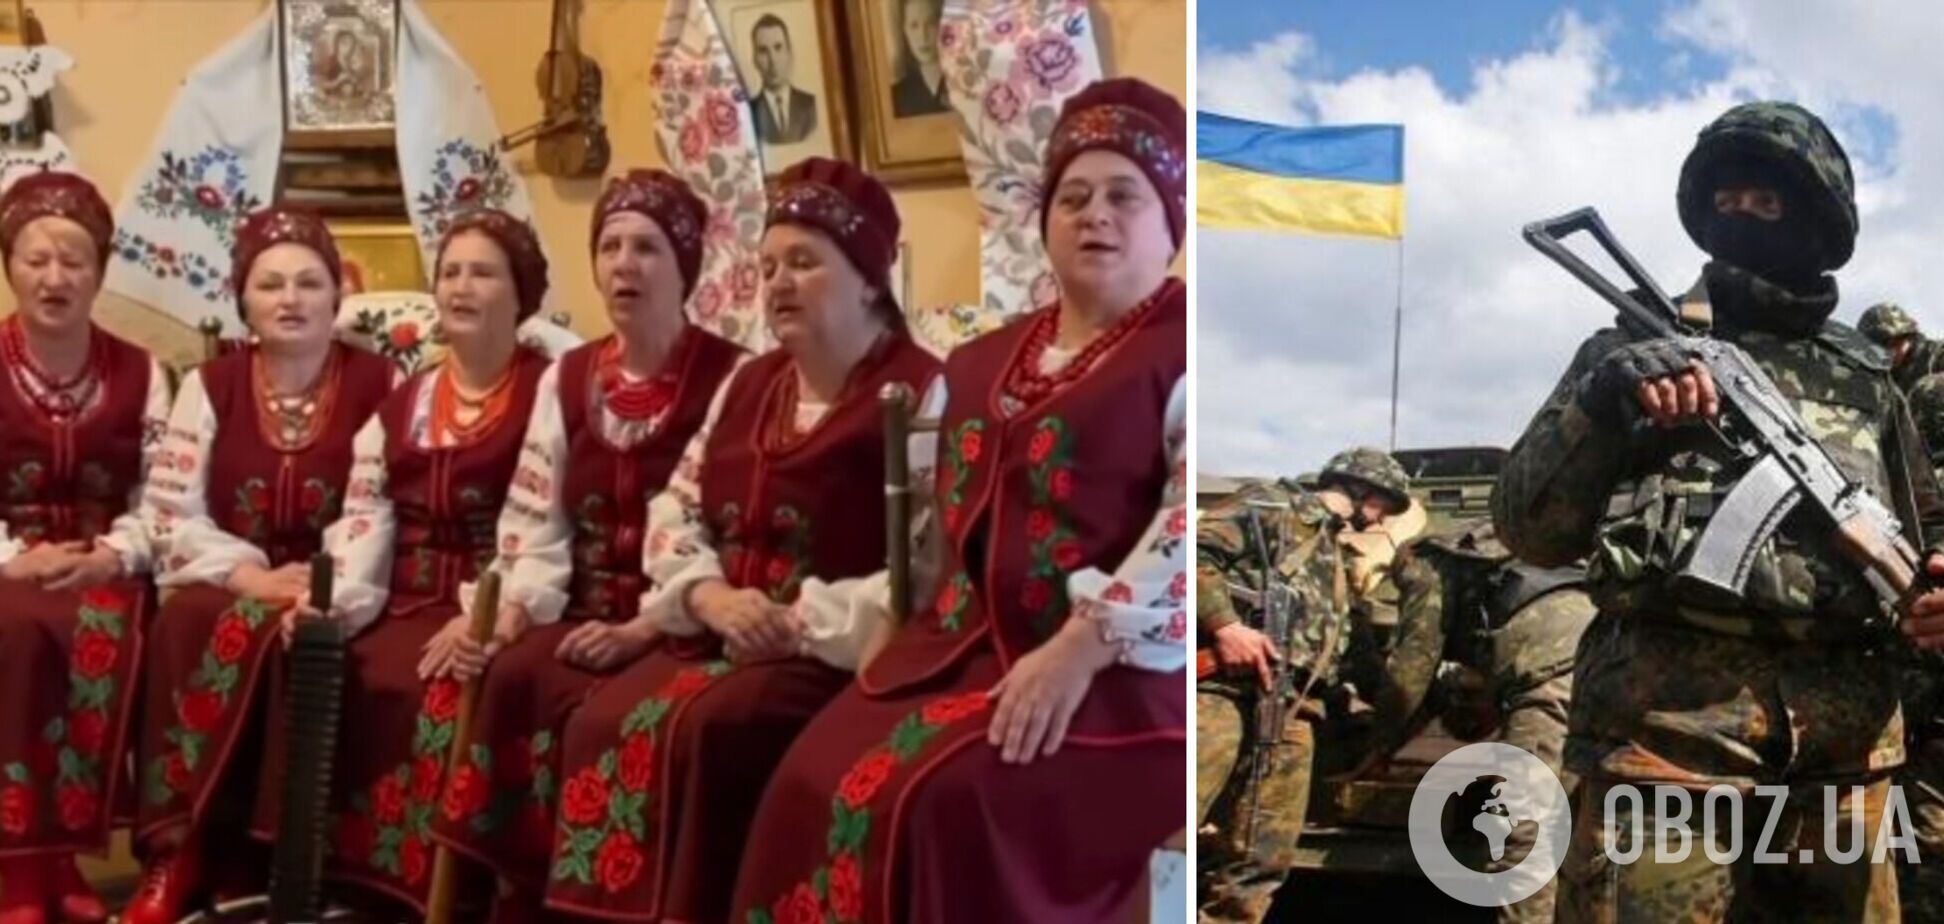 'Горіли танки, палали': в Україні з'явився новий хіт про боротьбу з російськими окупантами. Відео